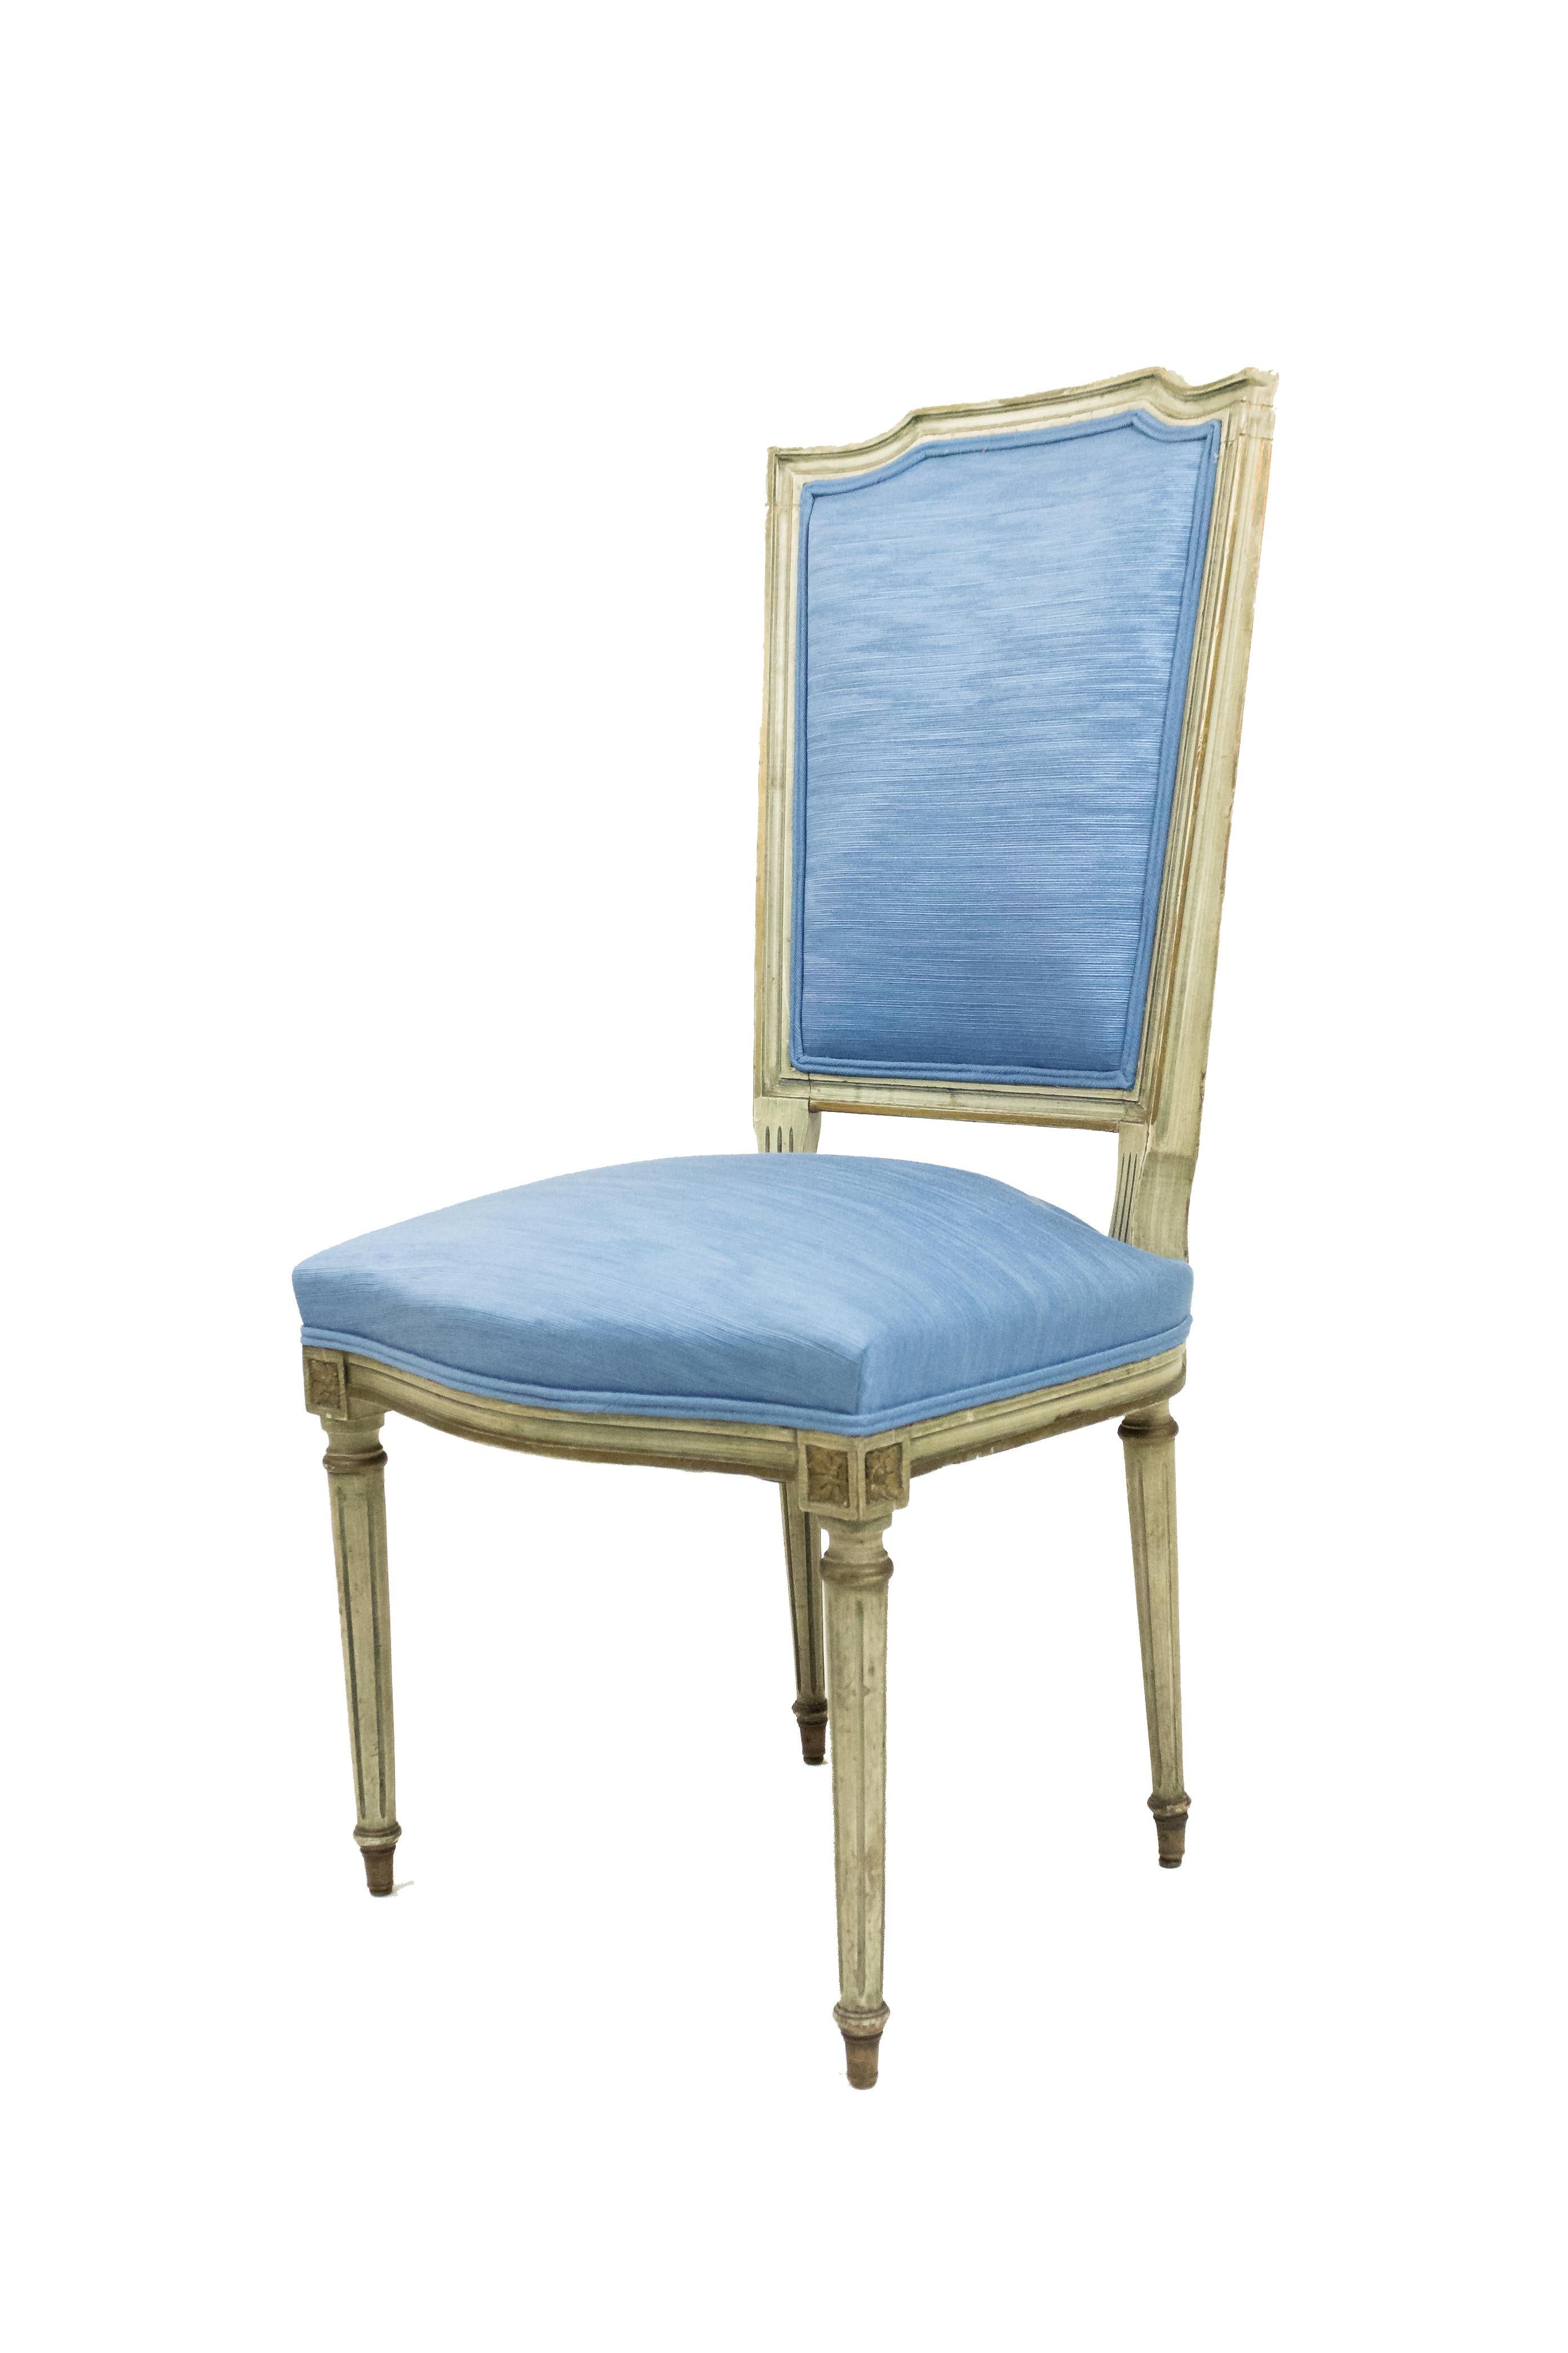 Ensemble de 6 chaises de style Louis XVI (20ème siècle) peintes en vert clair avec assise et dossier tapissés en bleu clair.
